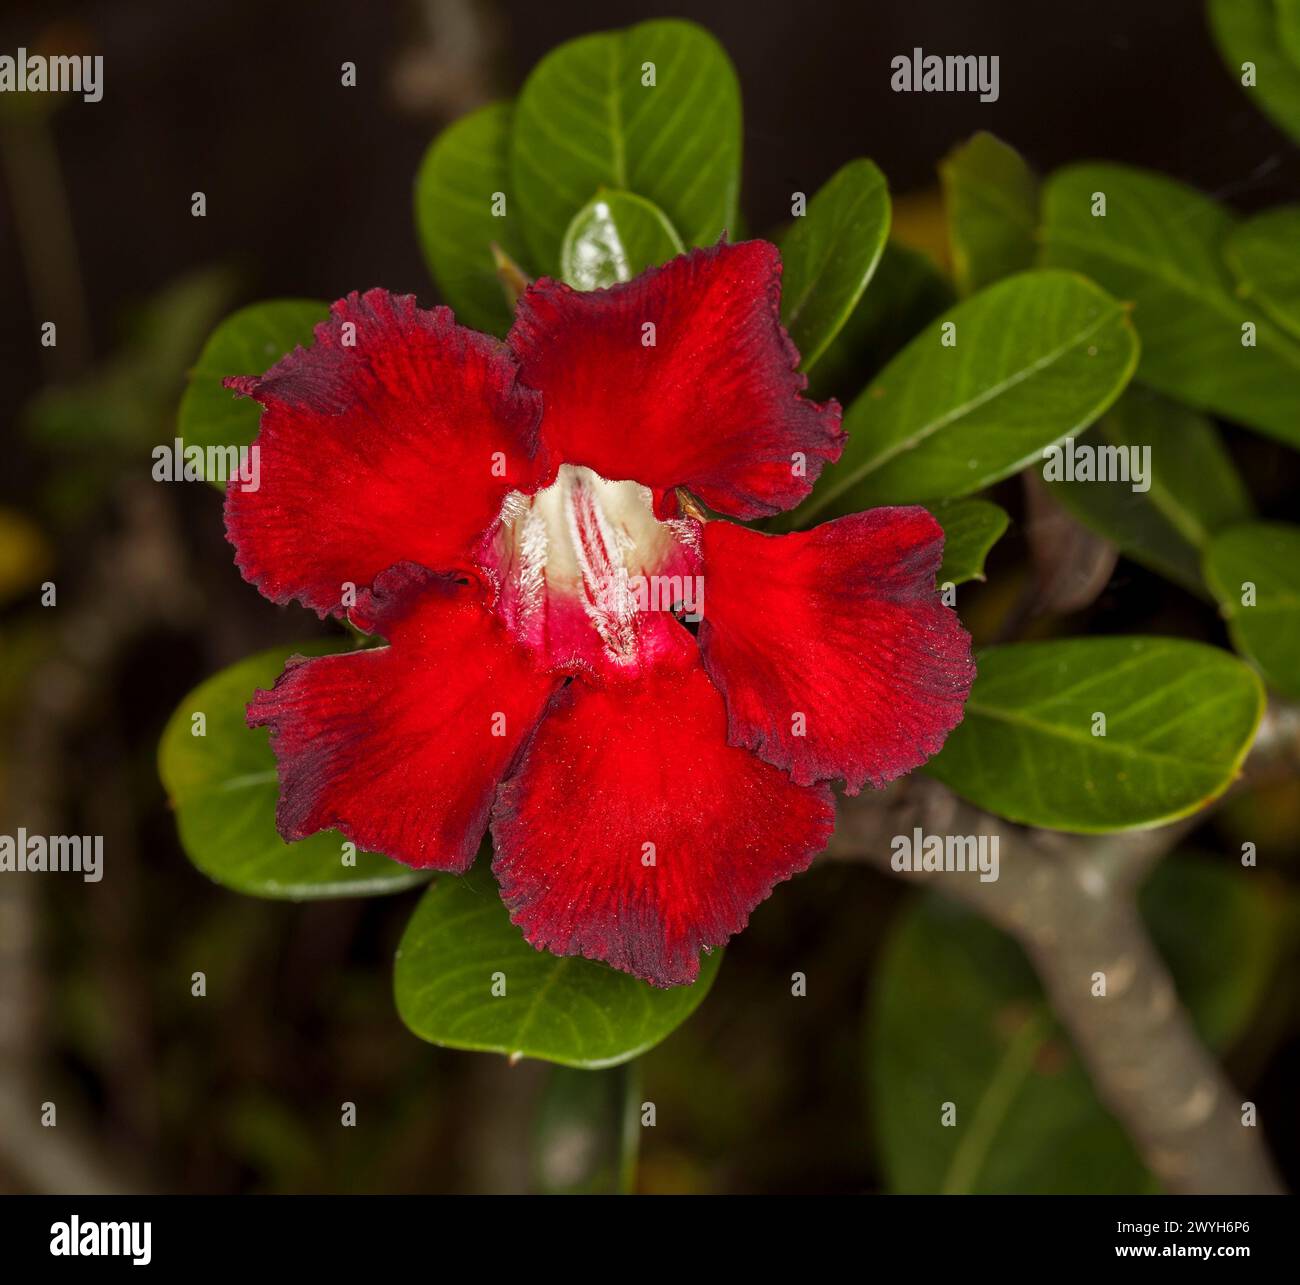 Spectaculaire fleur rouge profond et feuilles vert foncé d'Adenium obesum, African Desert Rose, sur fond sombre Banque D'Images